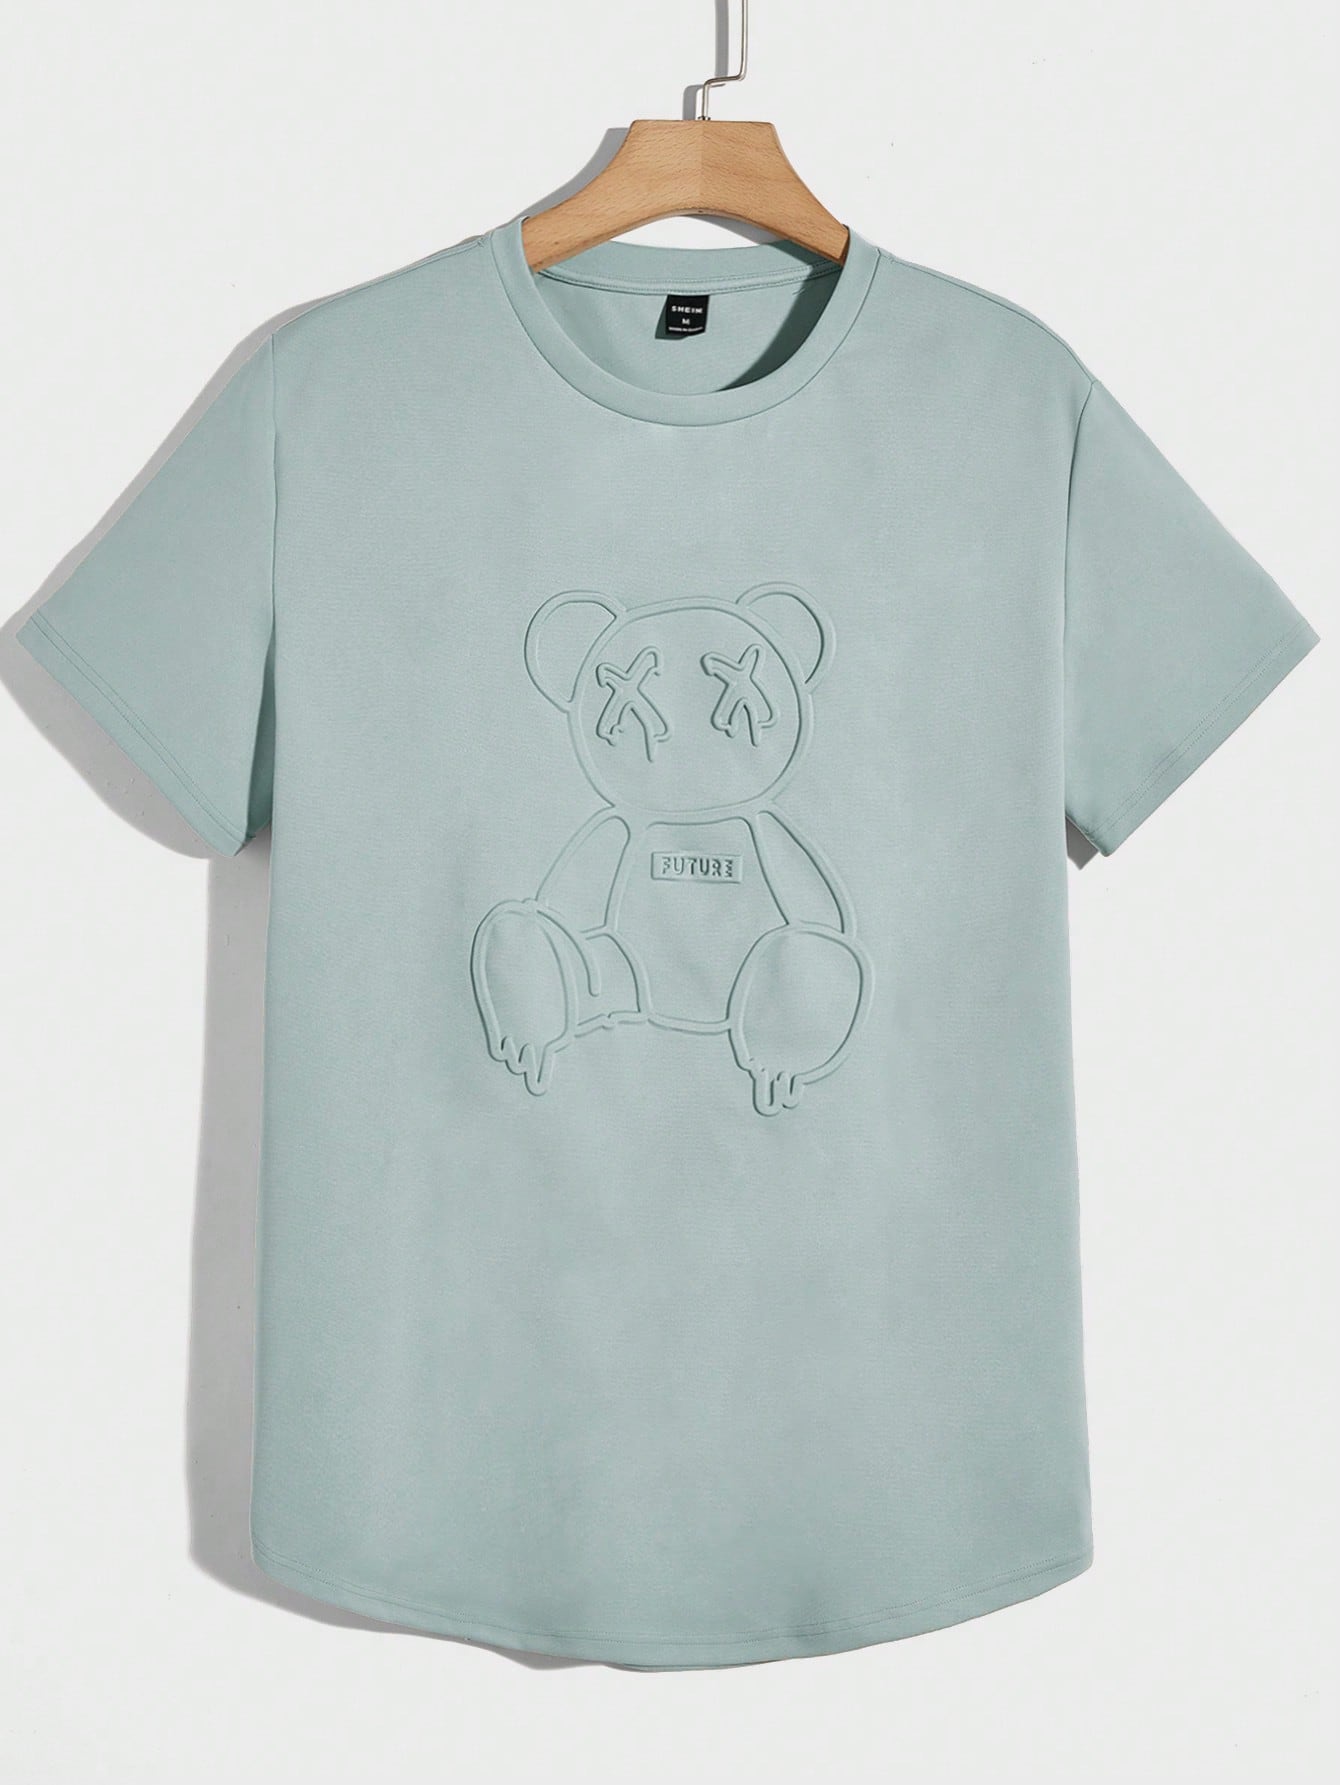 Мужская вязаная футболка Manfinity Hypemode с короткими рукавами и прессованным мишкой, мятно-зеленый